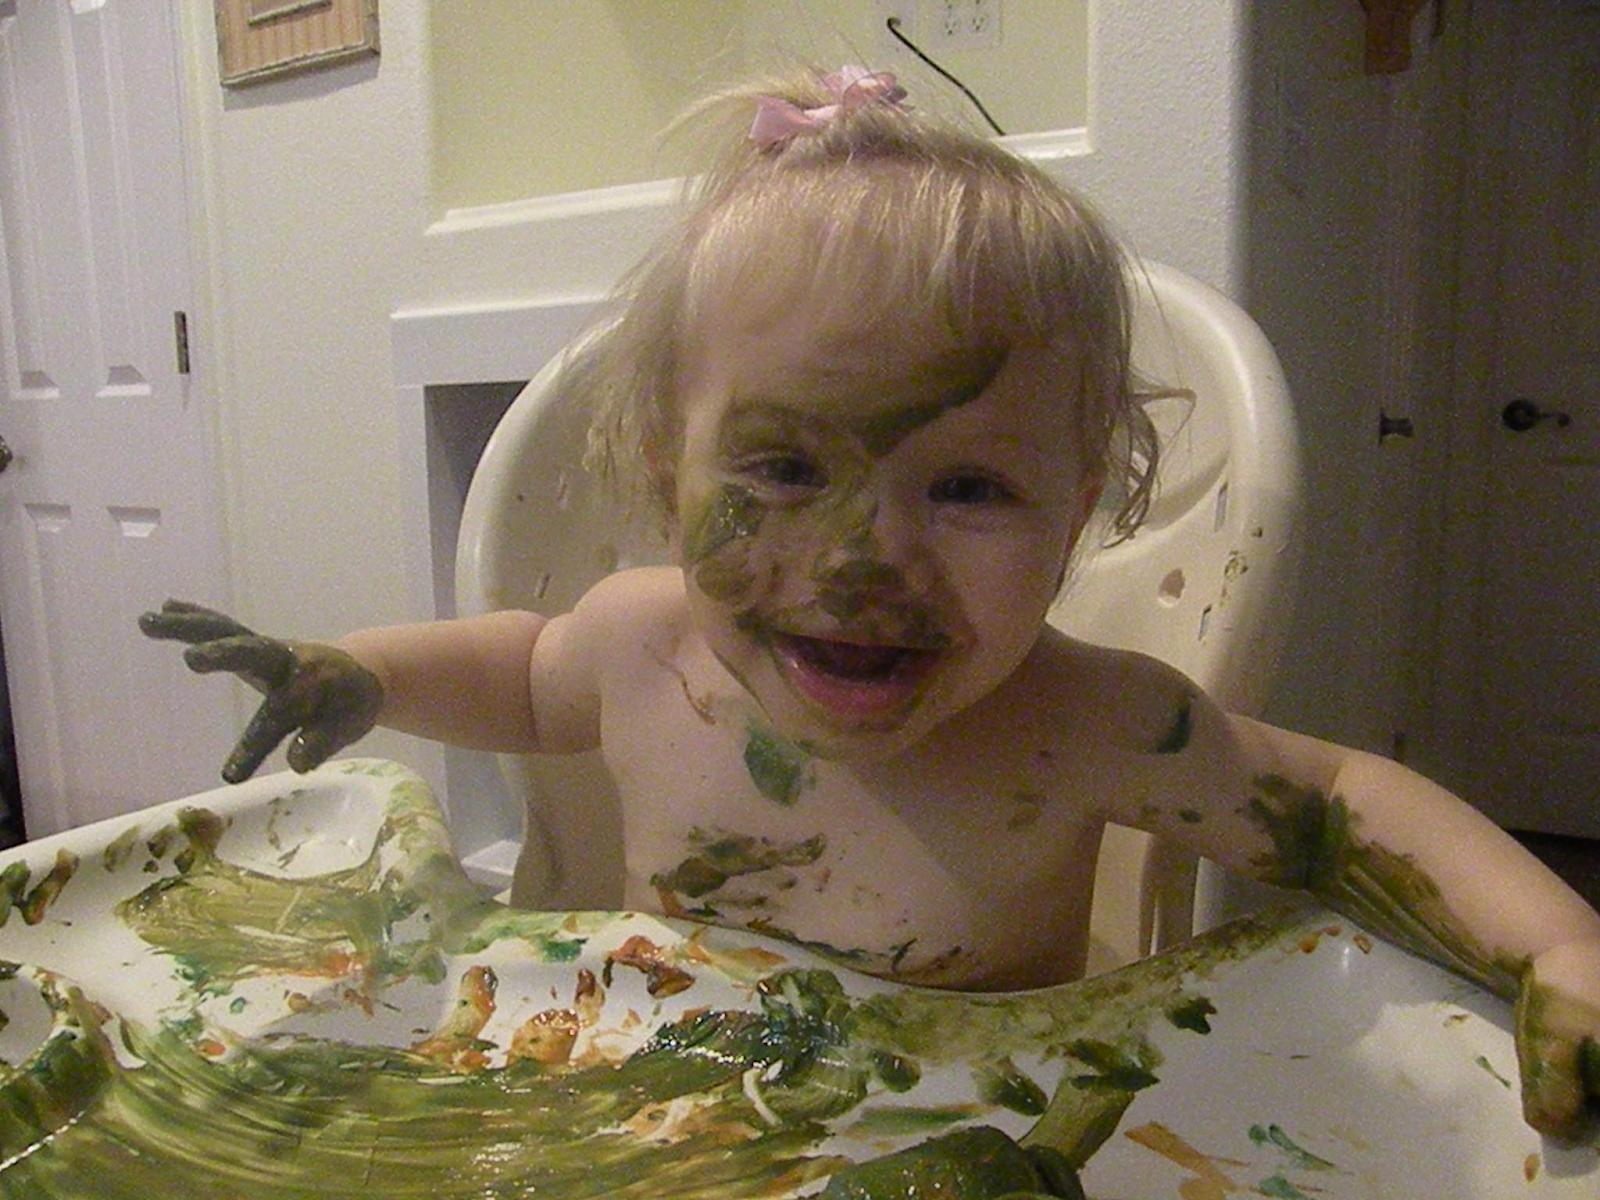 messy toddler